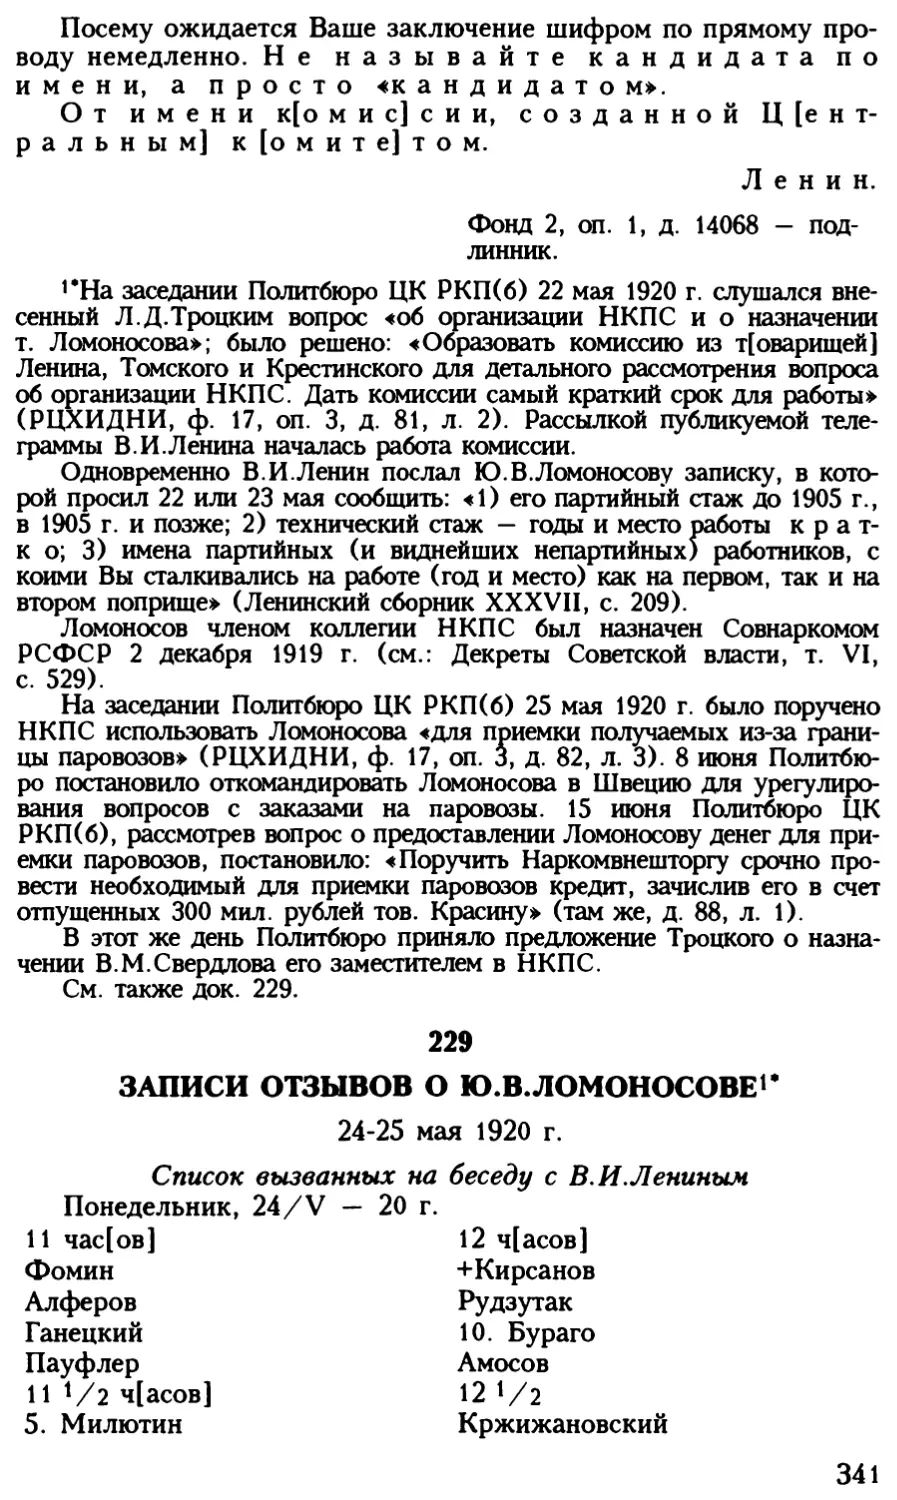 229. Записи отзывов о Ю.В.Ломоносове. 24 — 25 мая 1920 г